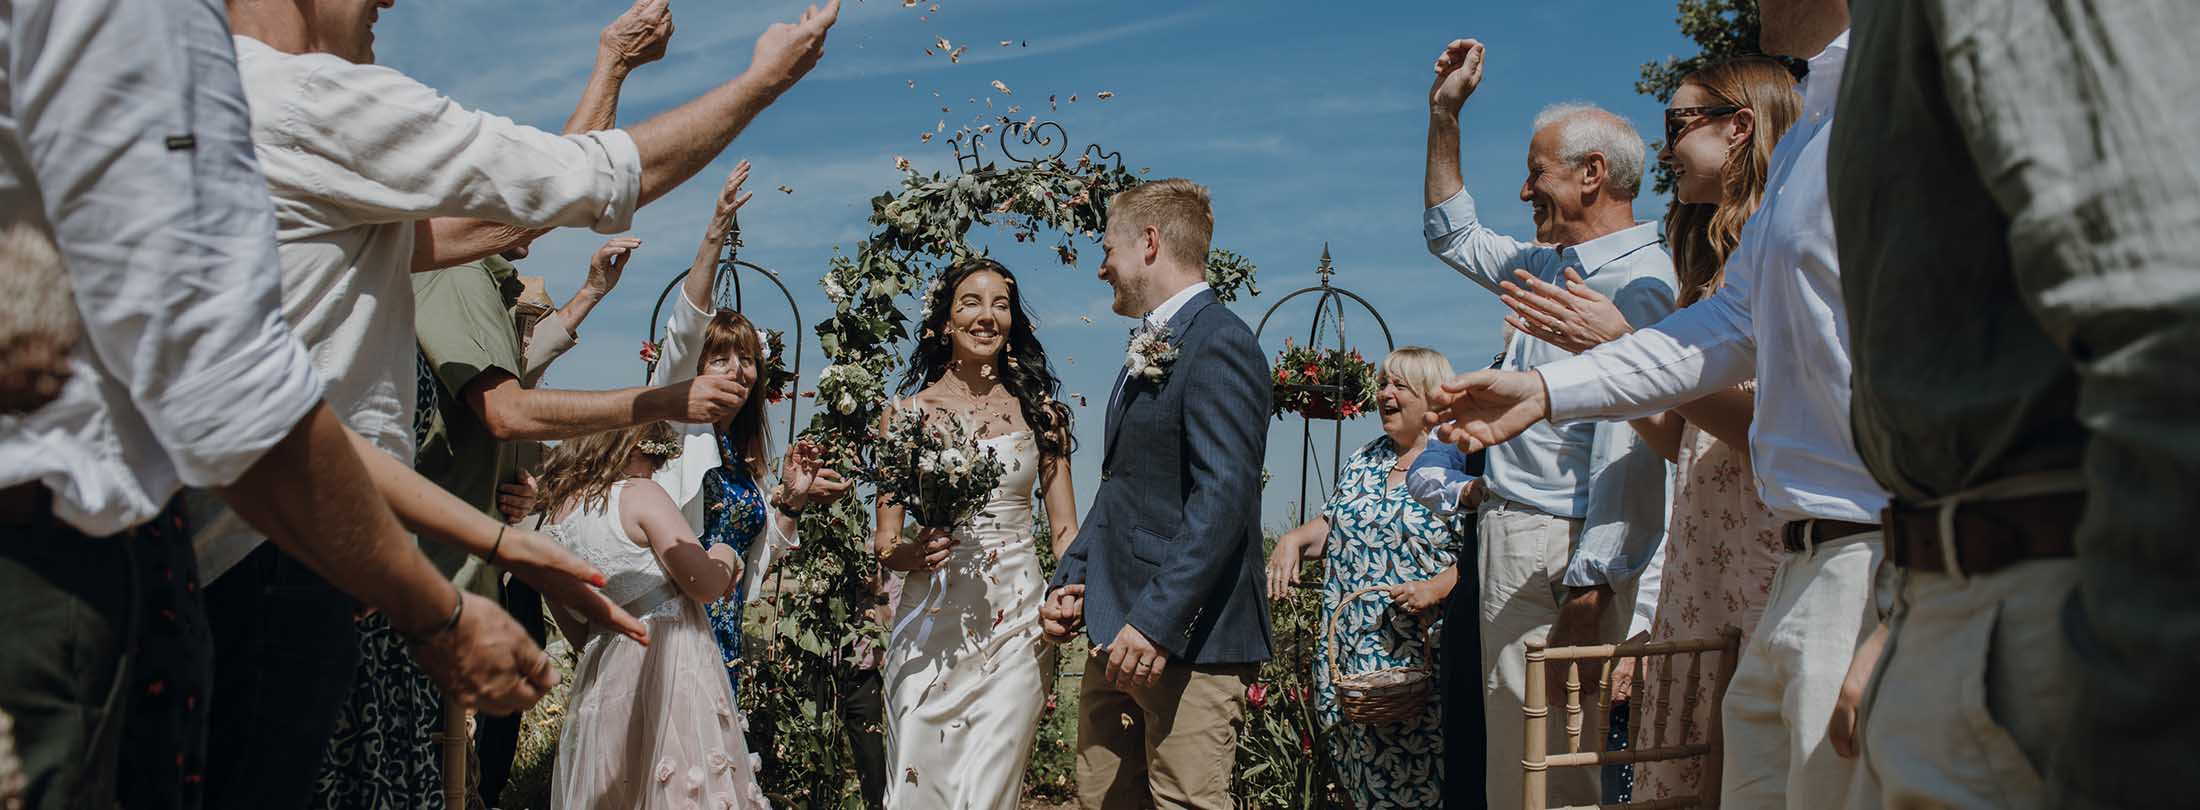 midlands wedding photographers james anthony fashionable weddings photography